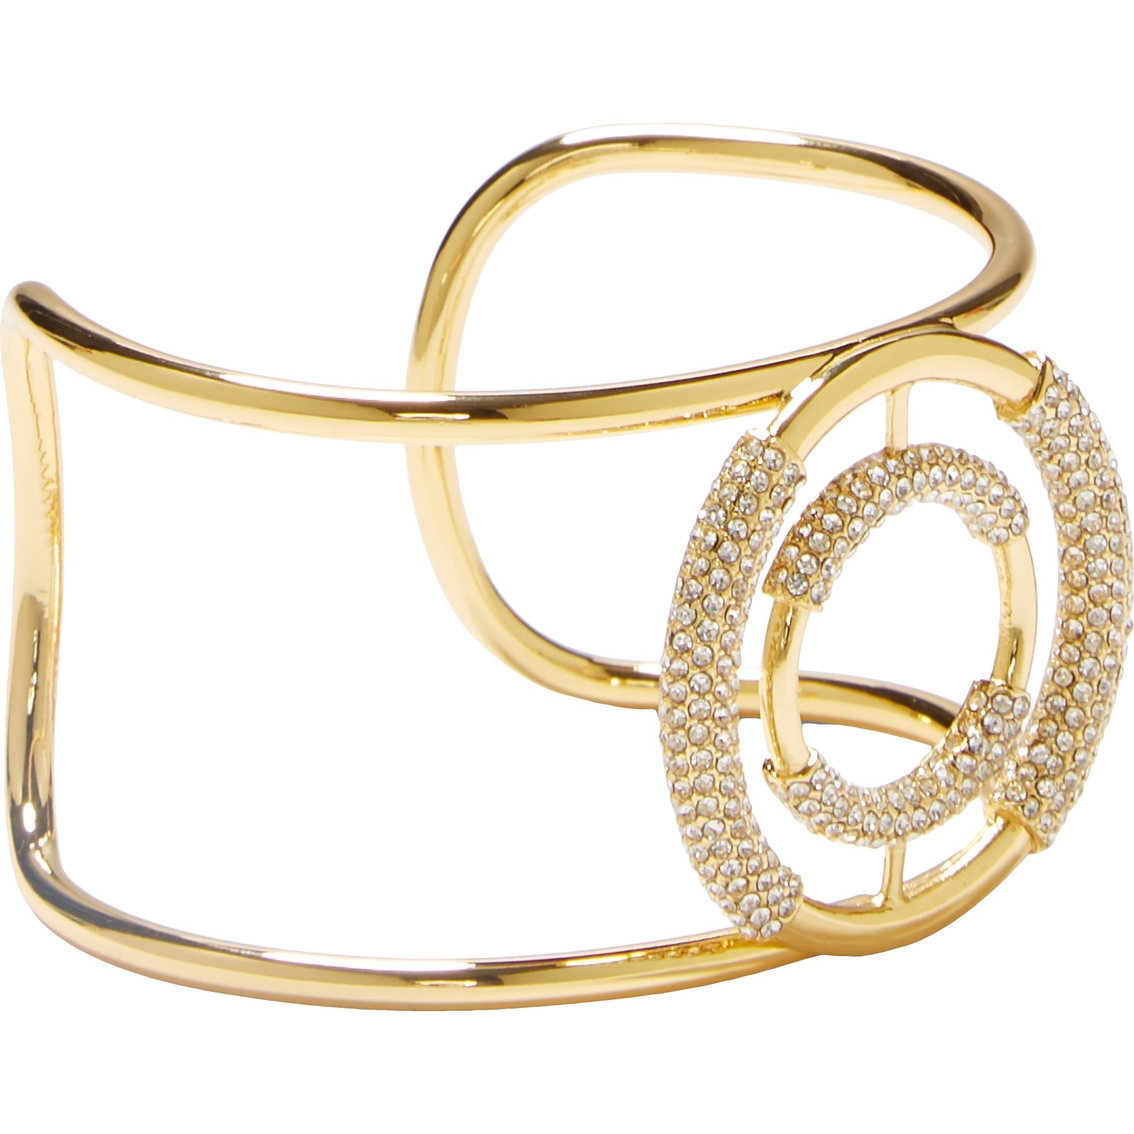 Vince Camuto Goldtone Cuff Bracelet | Fashion Bracelets | Jewelry